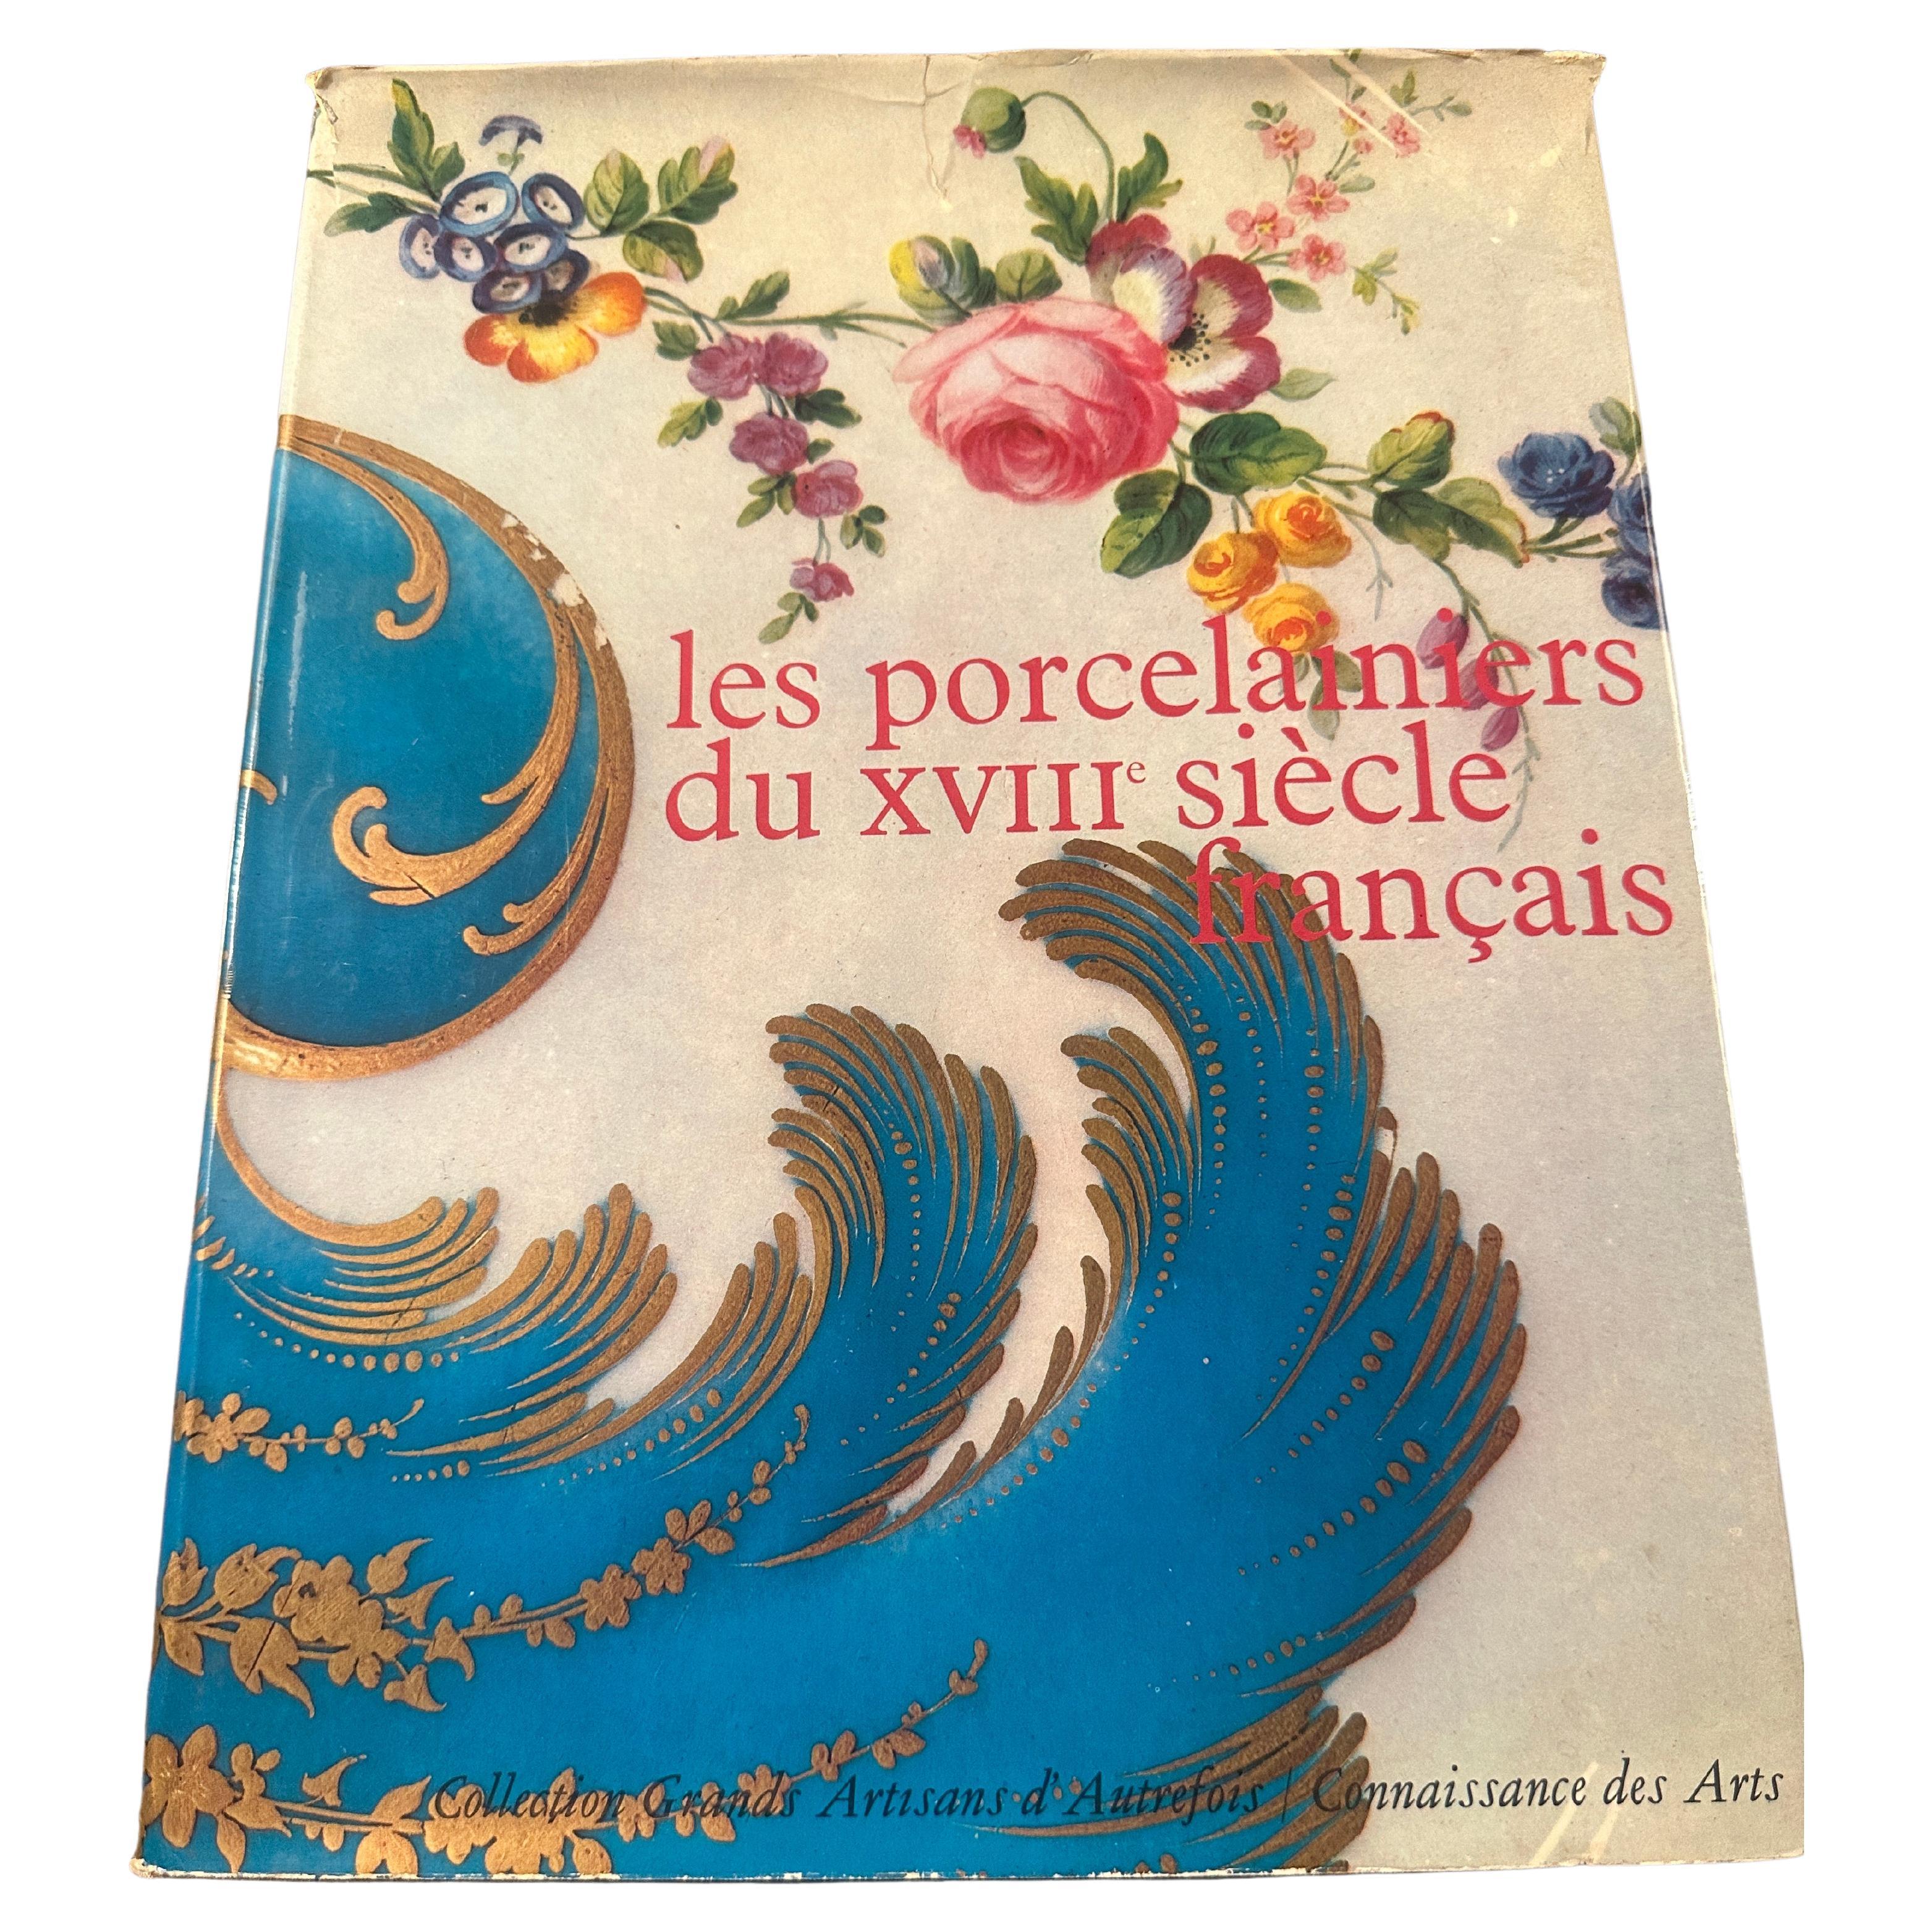 Les Porcelainiers du XVIII Siecle Francais, 1964, french, Connaissance des Arts